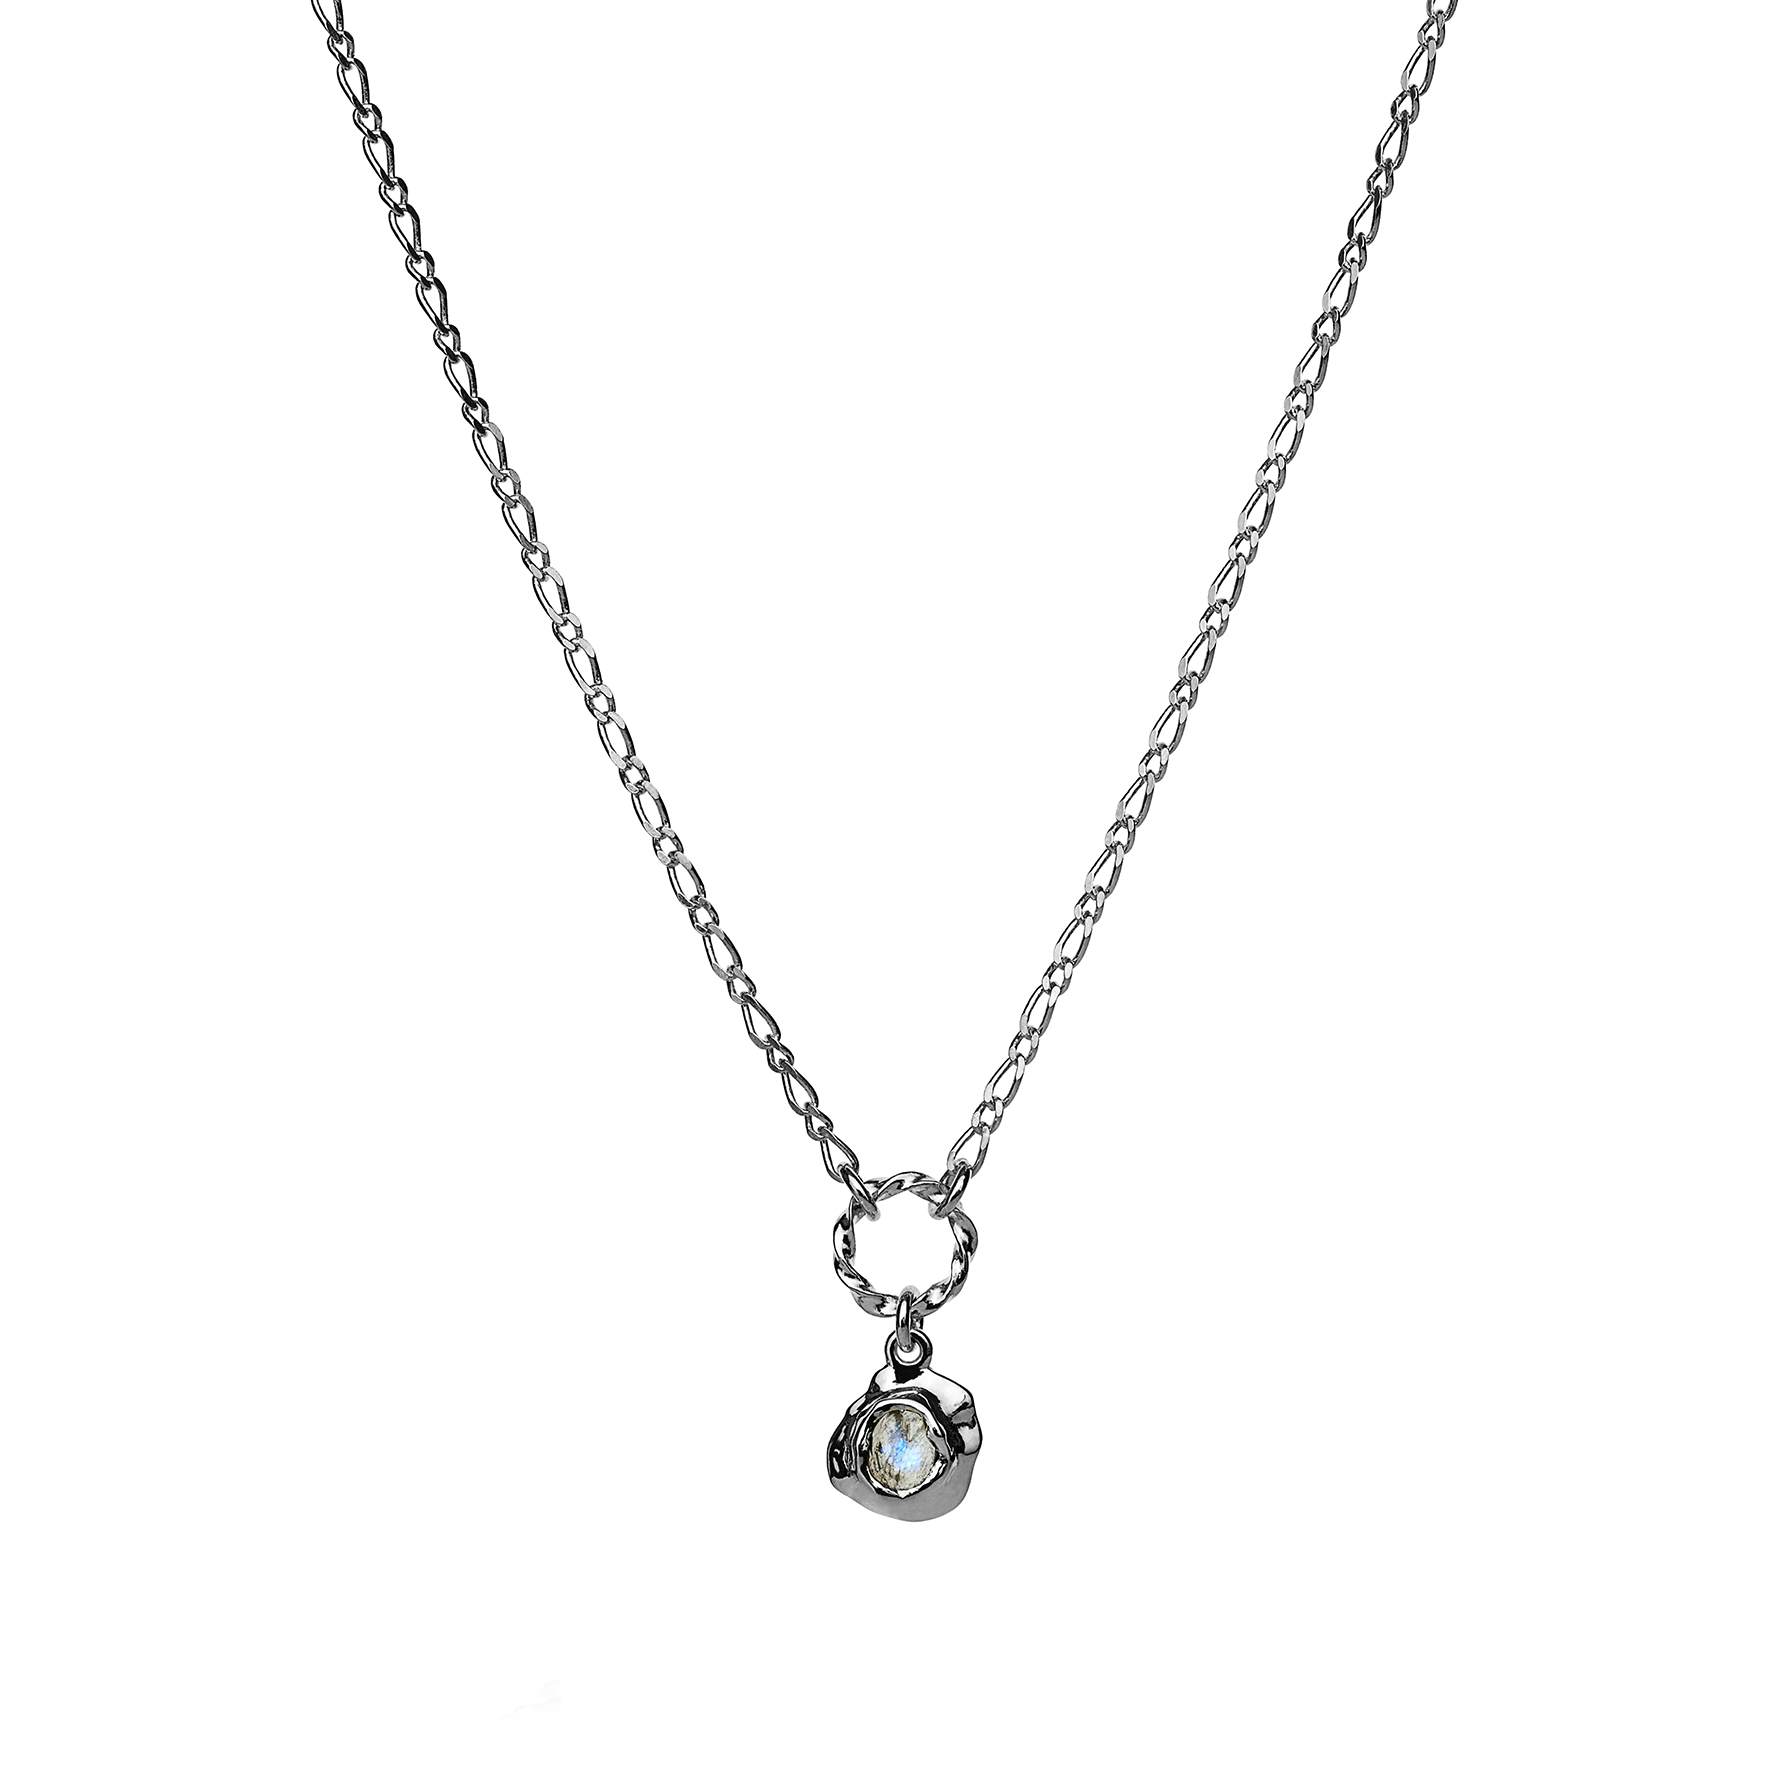 Dorith necklace von Maanesten in Silber Sterling 925